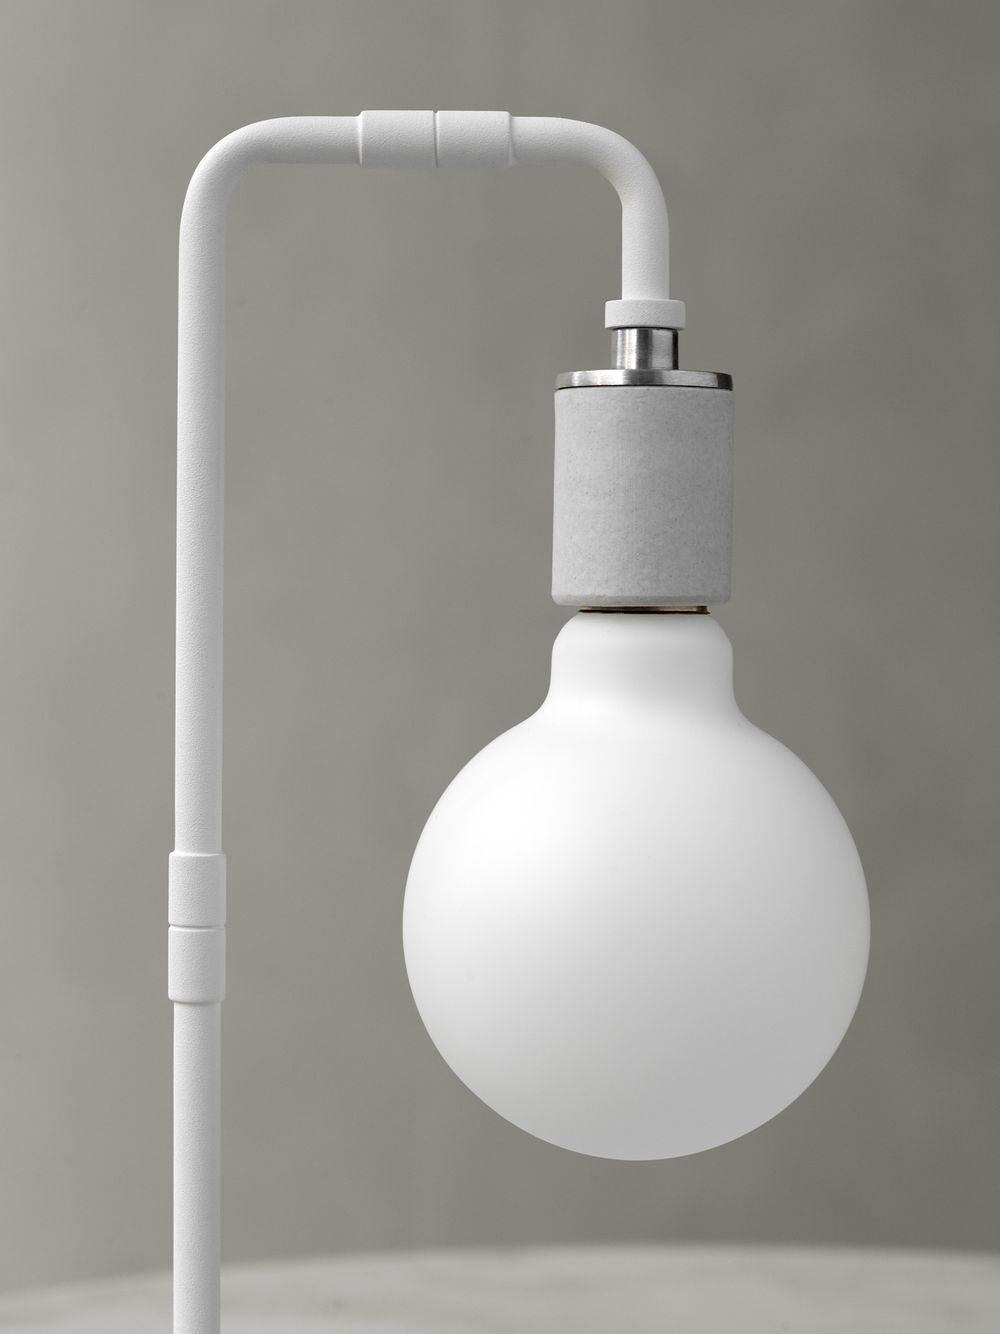 Audo Copenhagen Globe Led Light Bulb 9,5 Cm, Opal